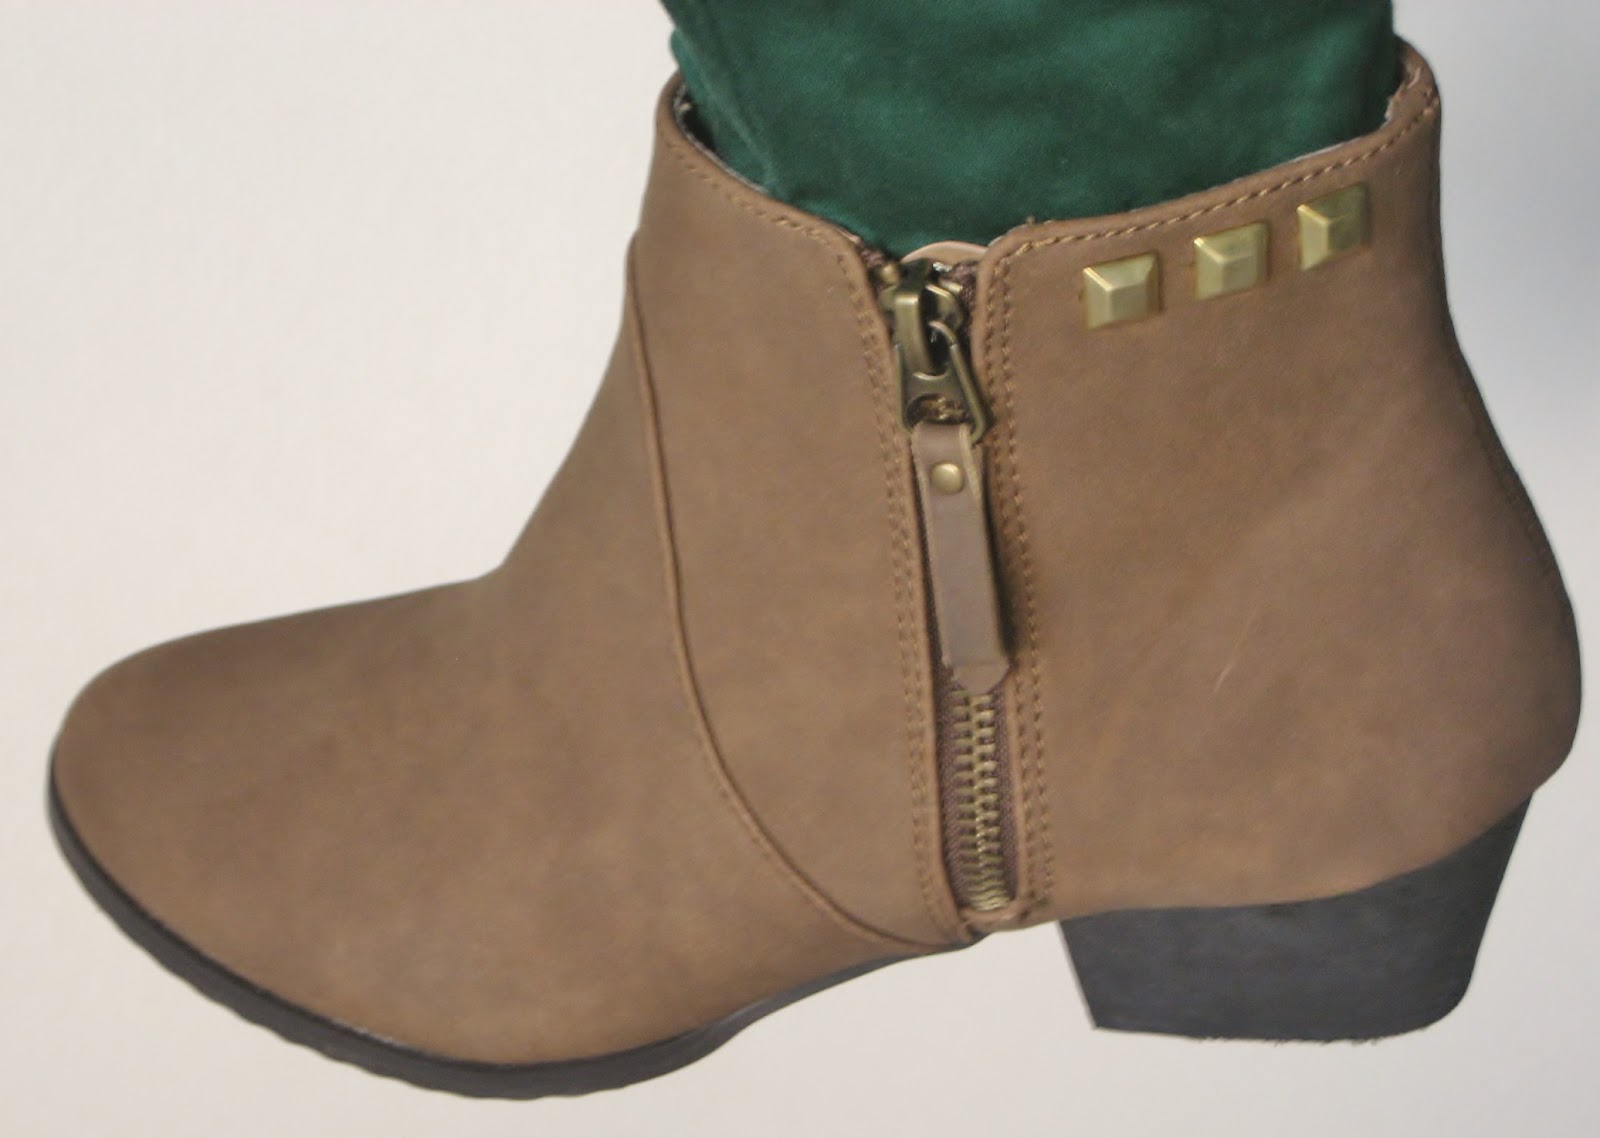 Manualidades y tendencias: DIY: con tachuelas / boots